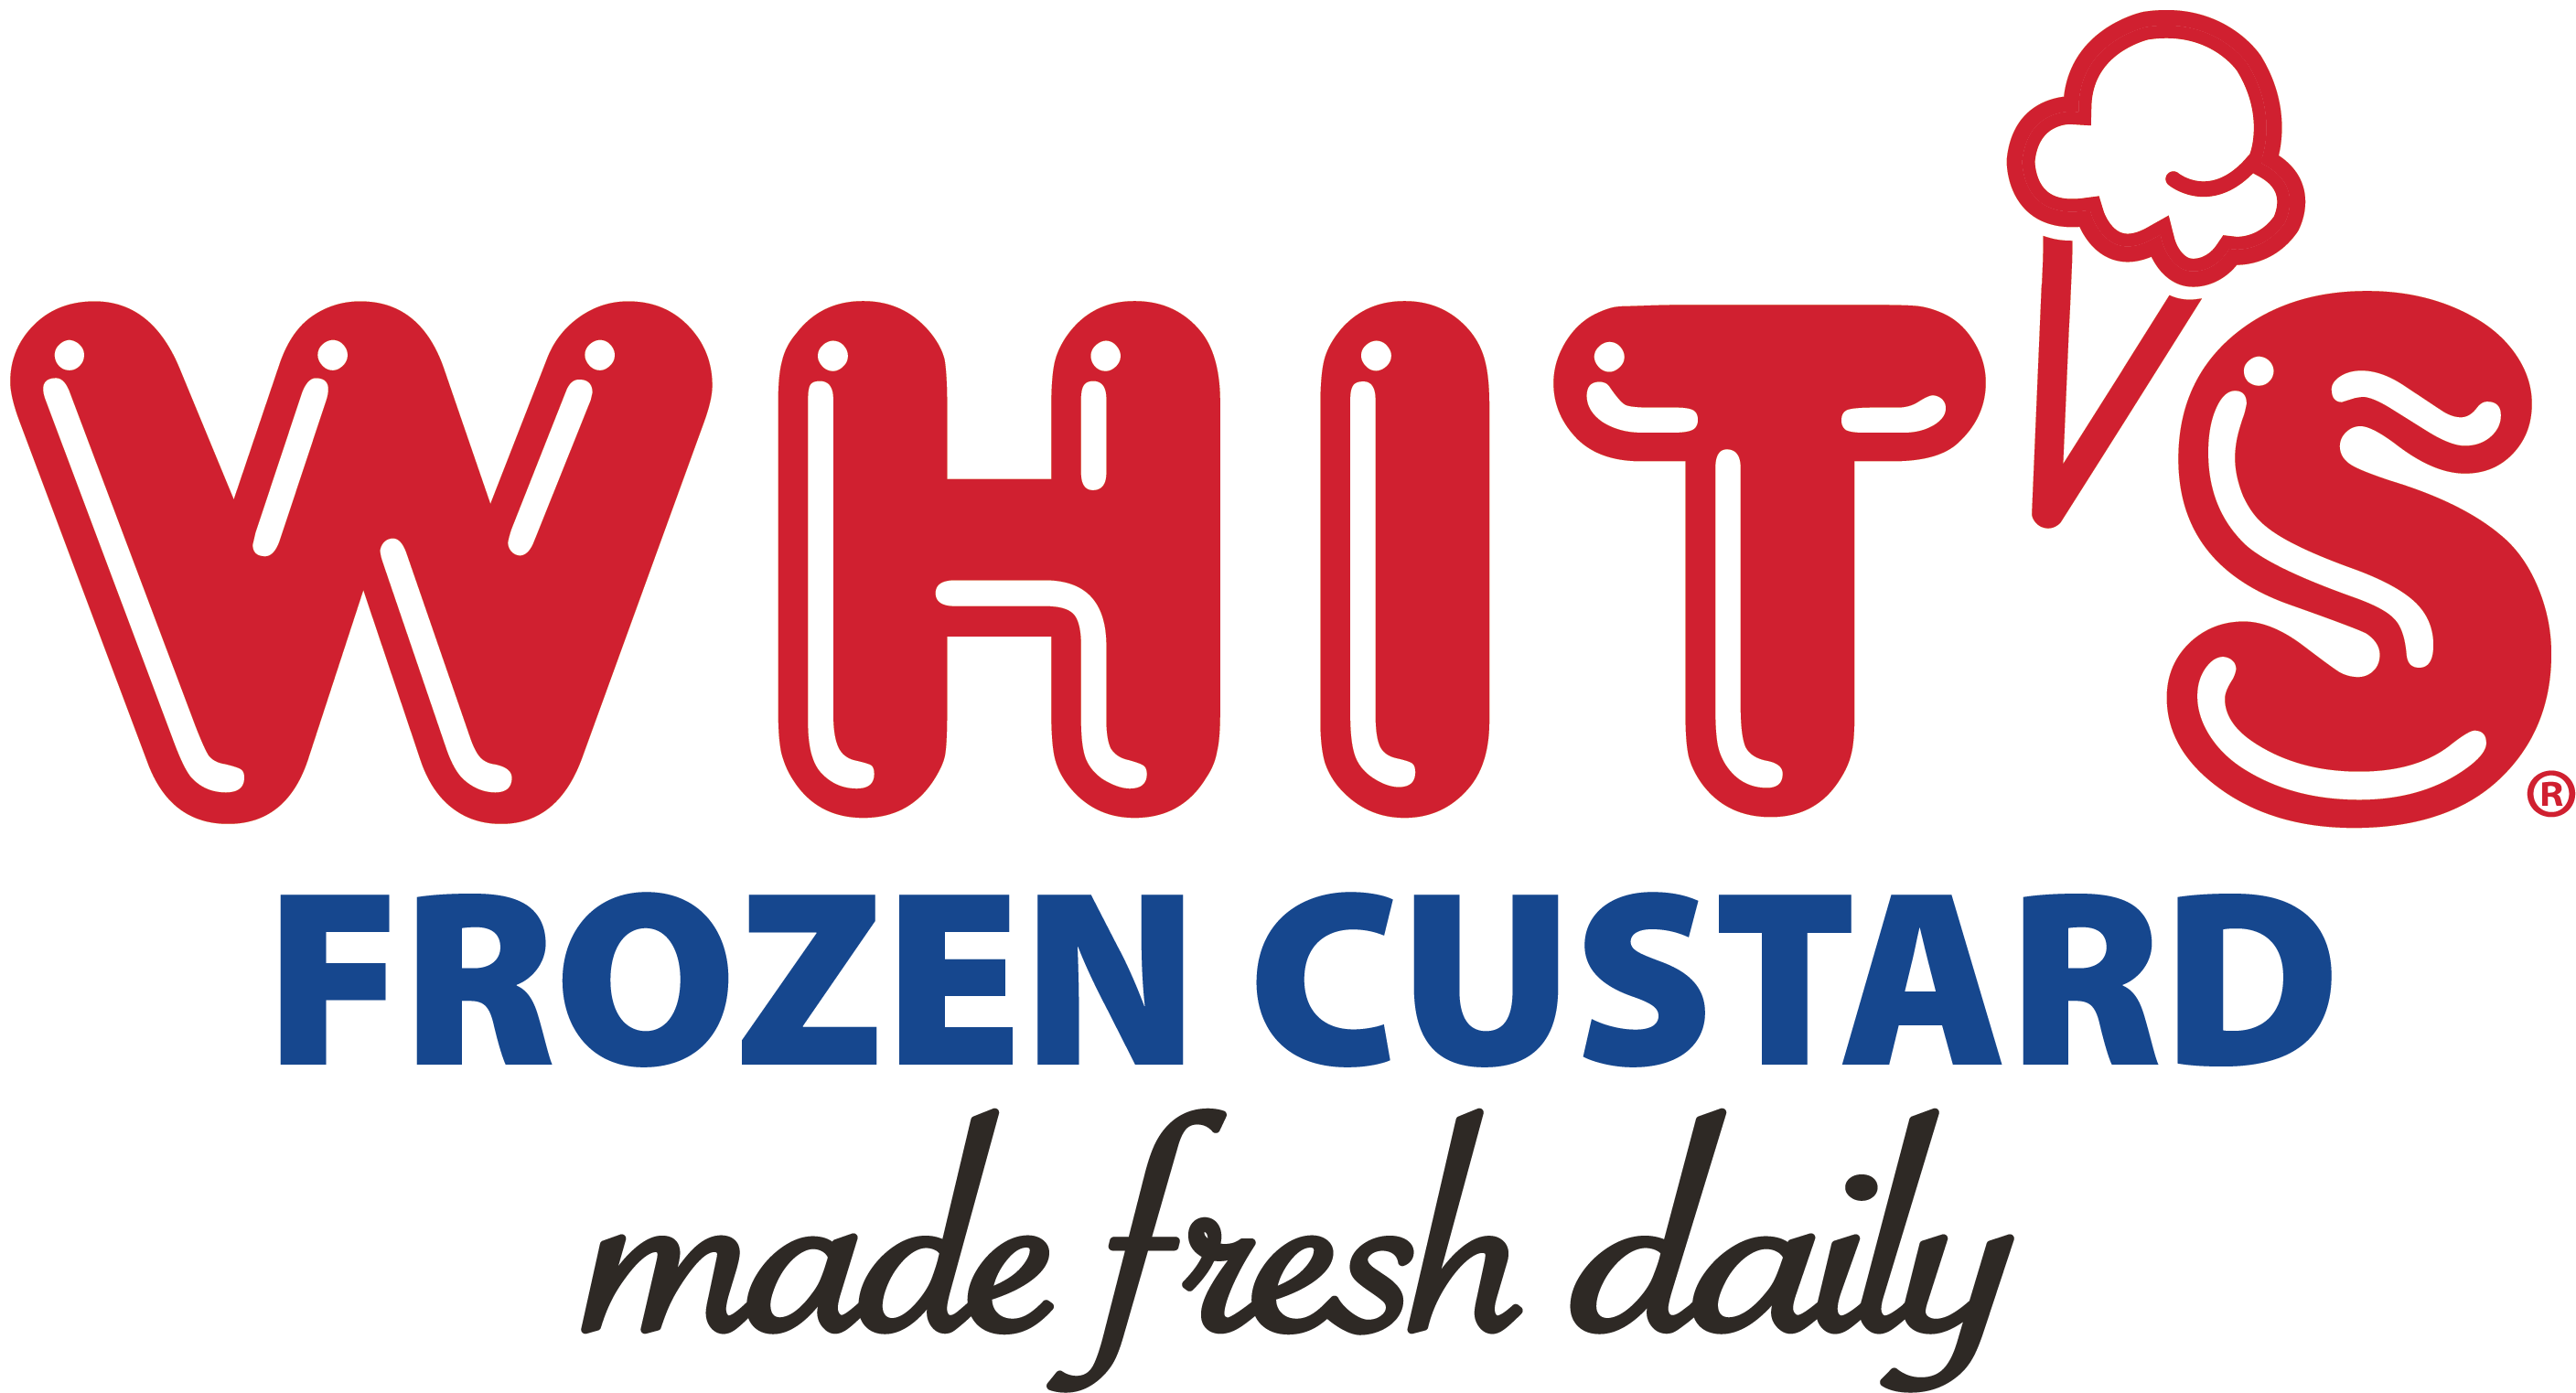 Whit_s Frozen Custard Logo